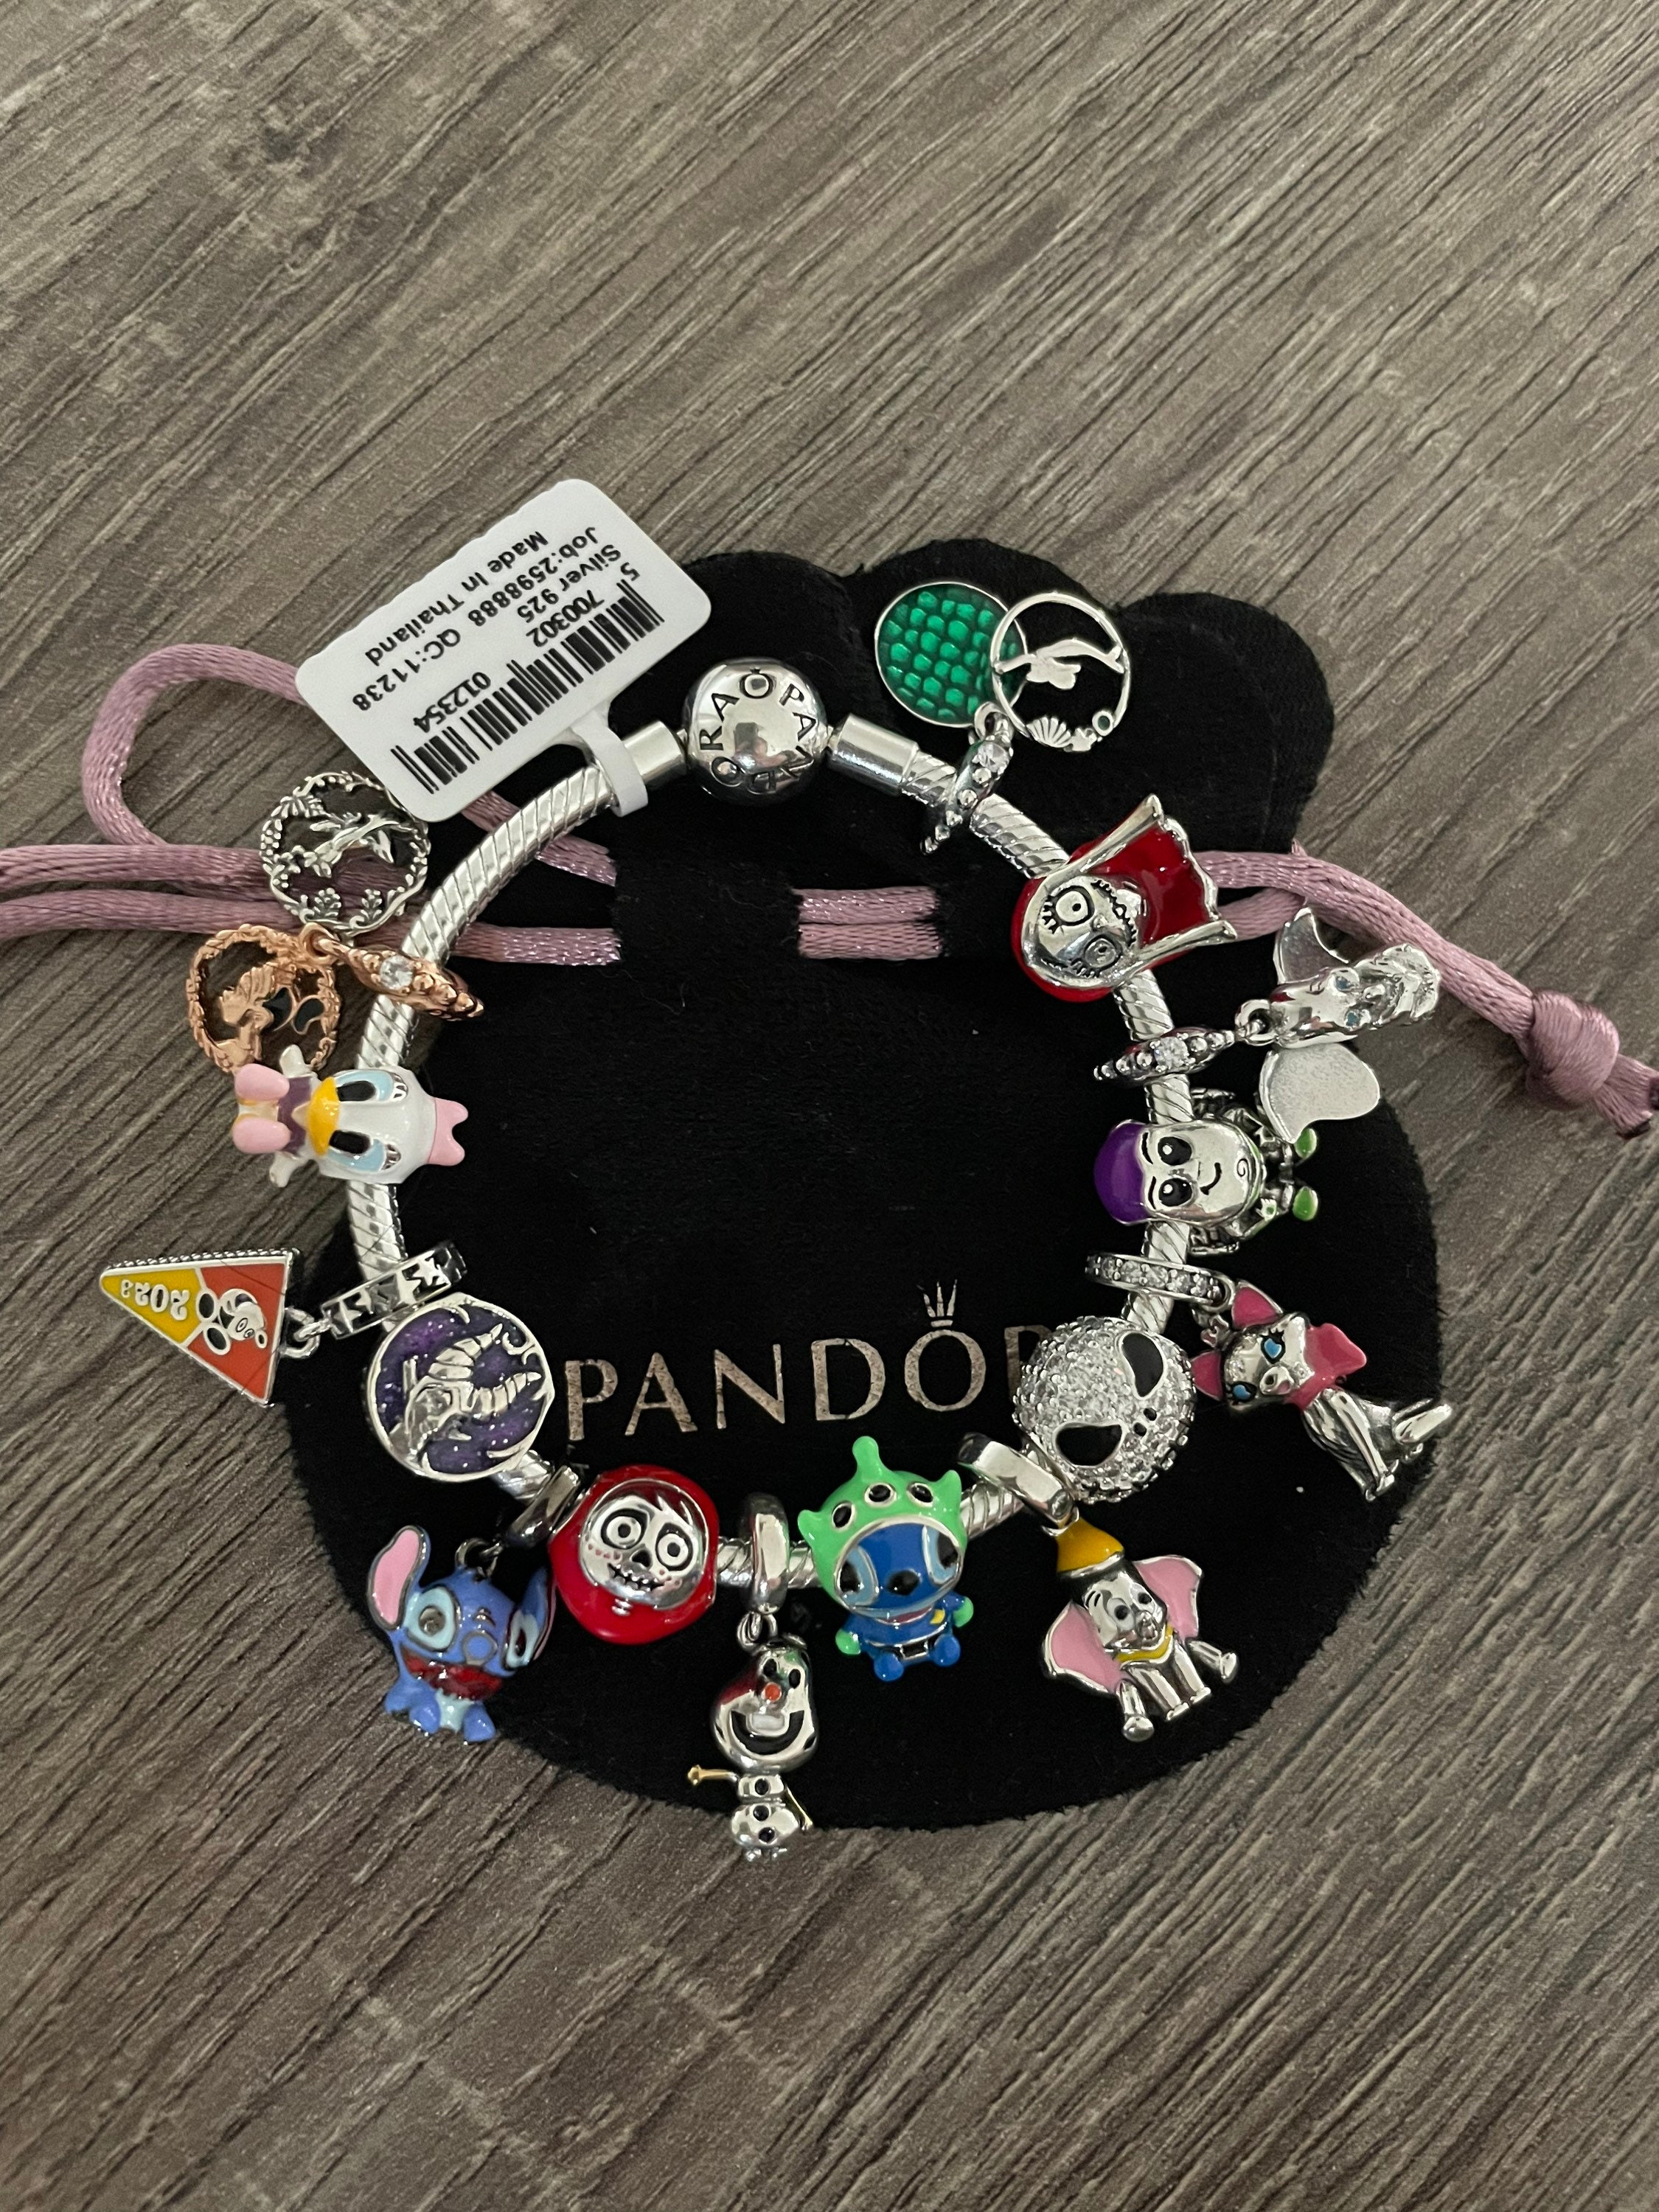 Ohana Lilo & Stitch Inspired Charm Fits Pandora Bracelet , Ohana Heart  Charm , Cartoon Charm , Movie Charm , 925 Sterling Silver 